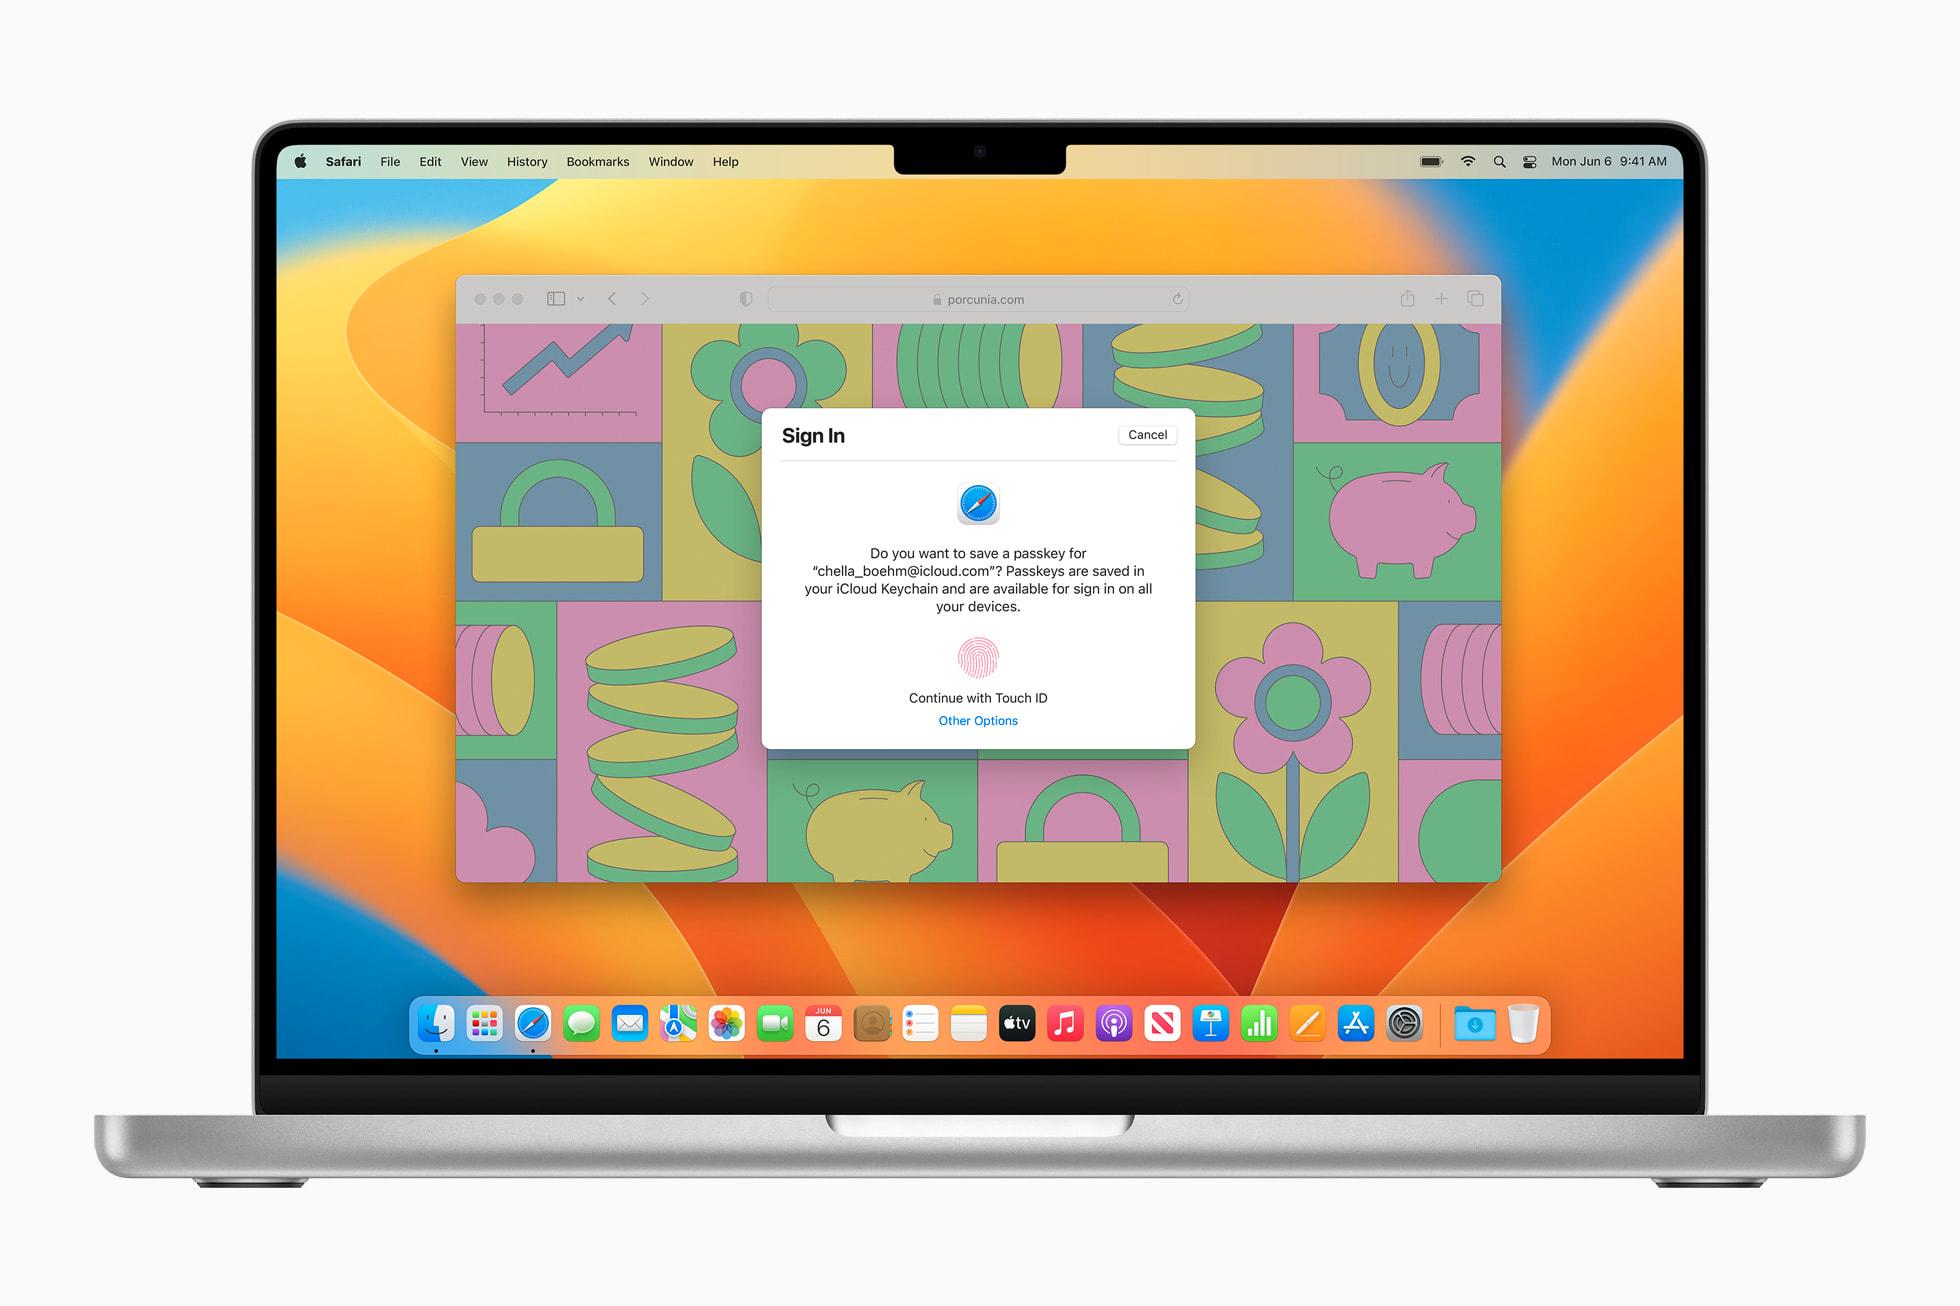 Slik ser det ut når Apples Safari spør deg om du vil lagre en passkey for et nettsted eller tjeneste. 